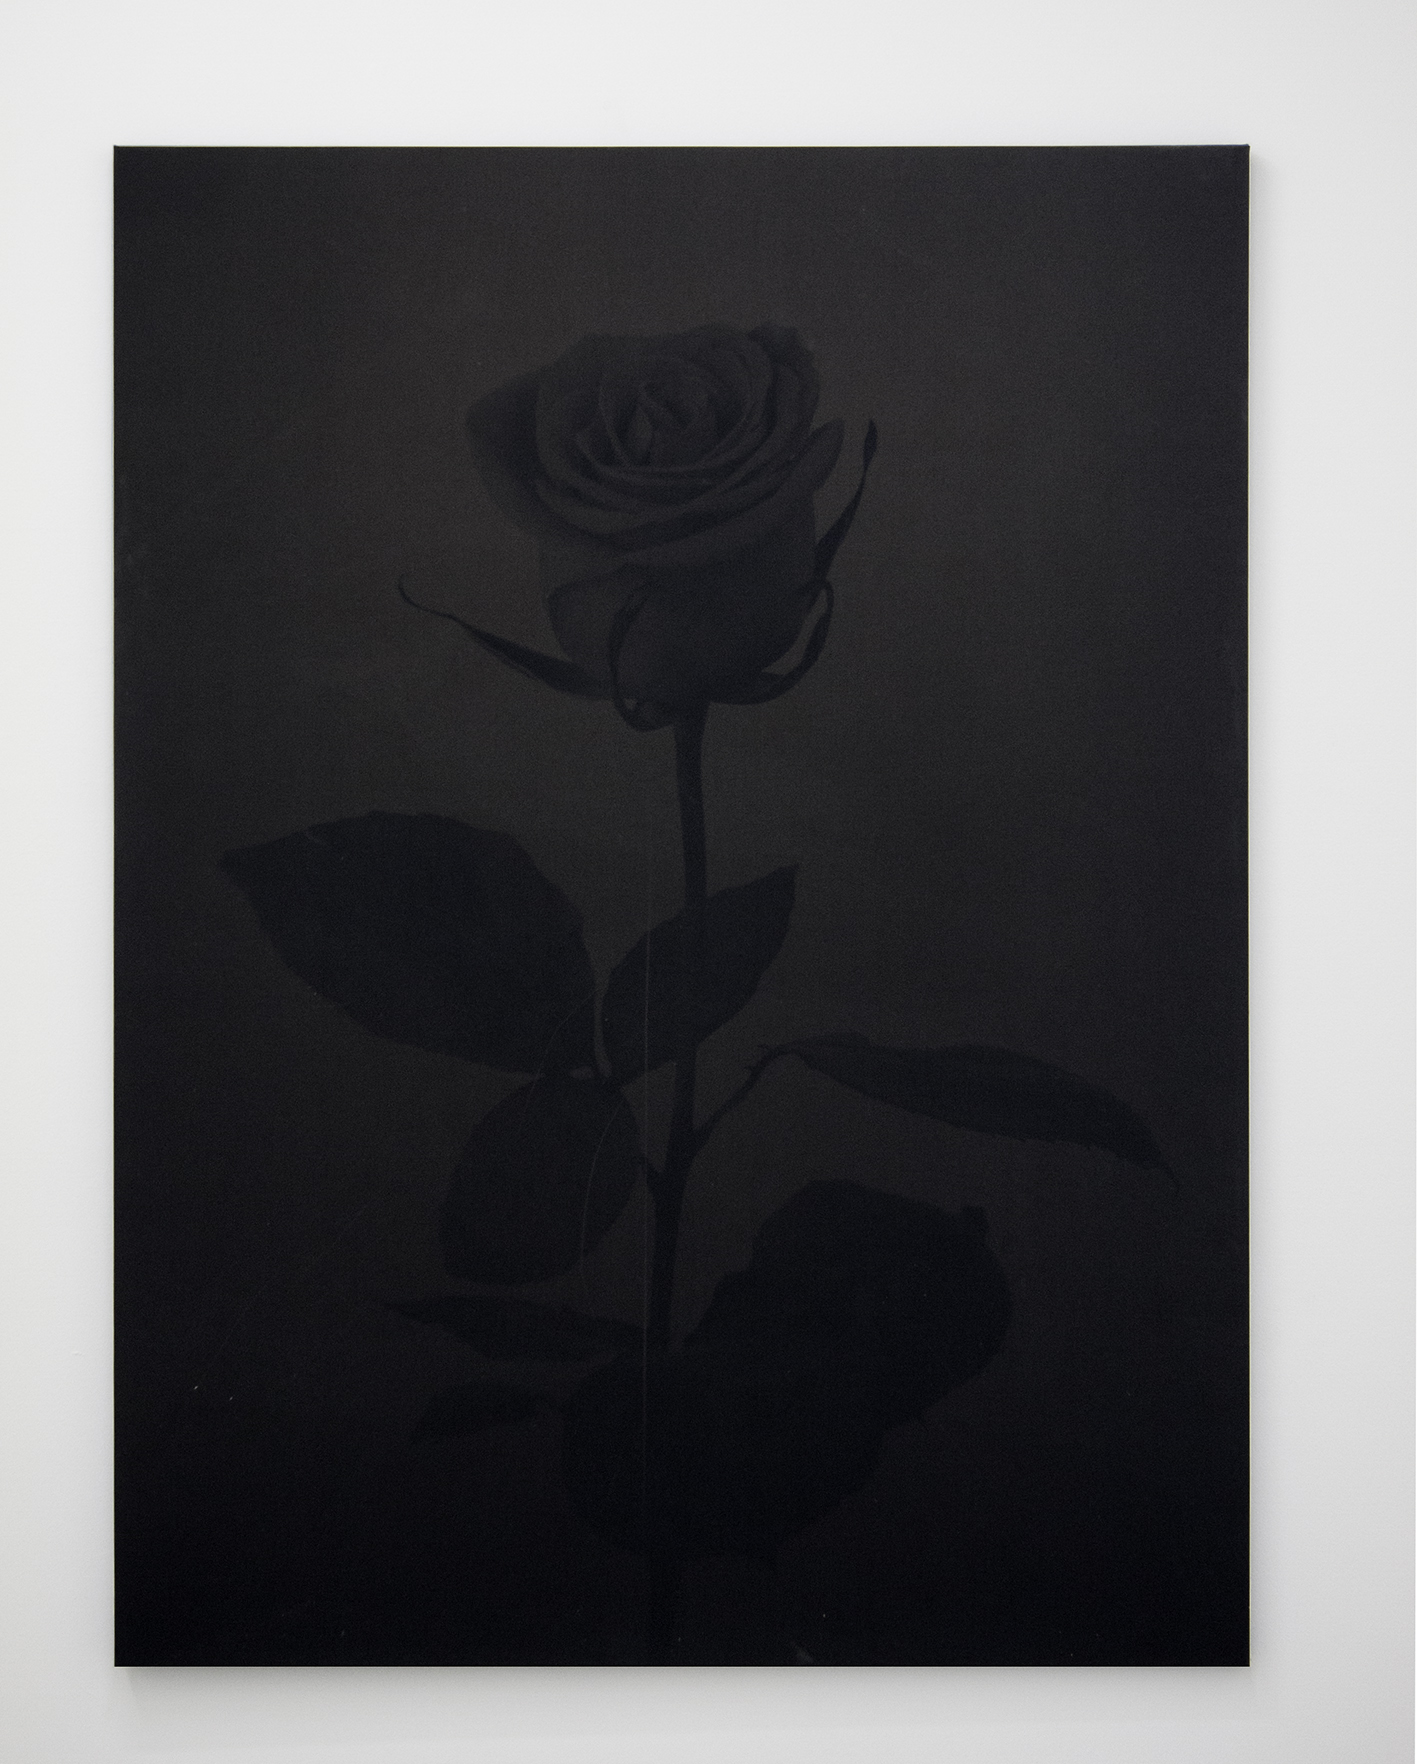 GH_Untitled(rose)_black